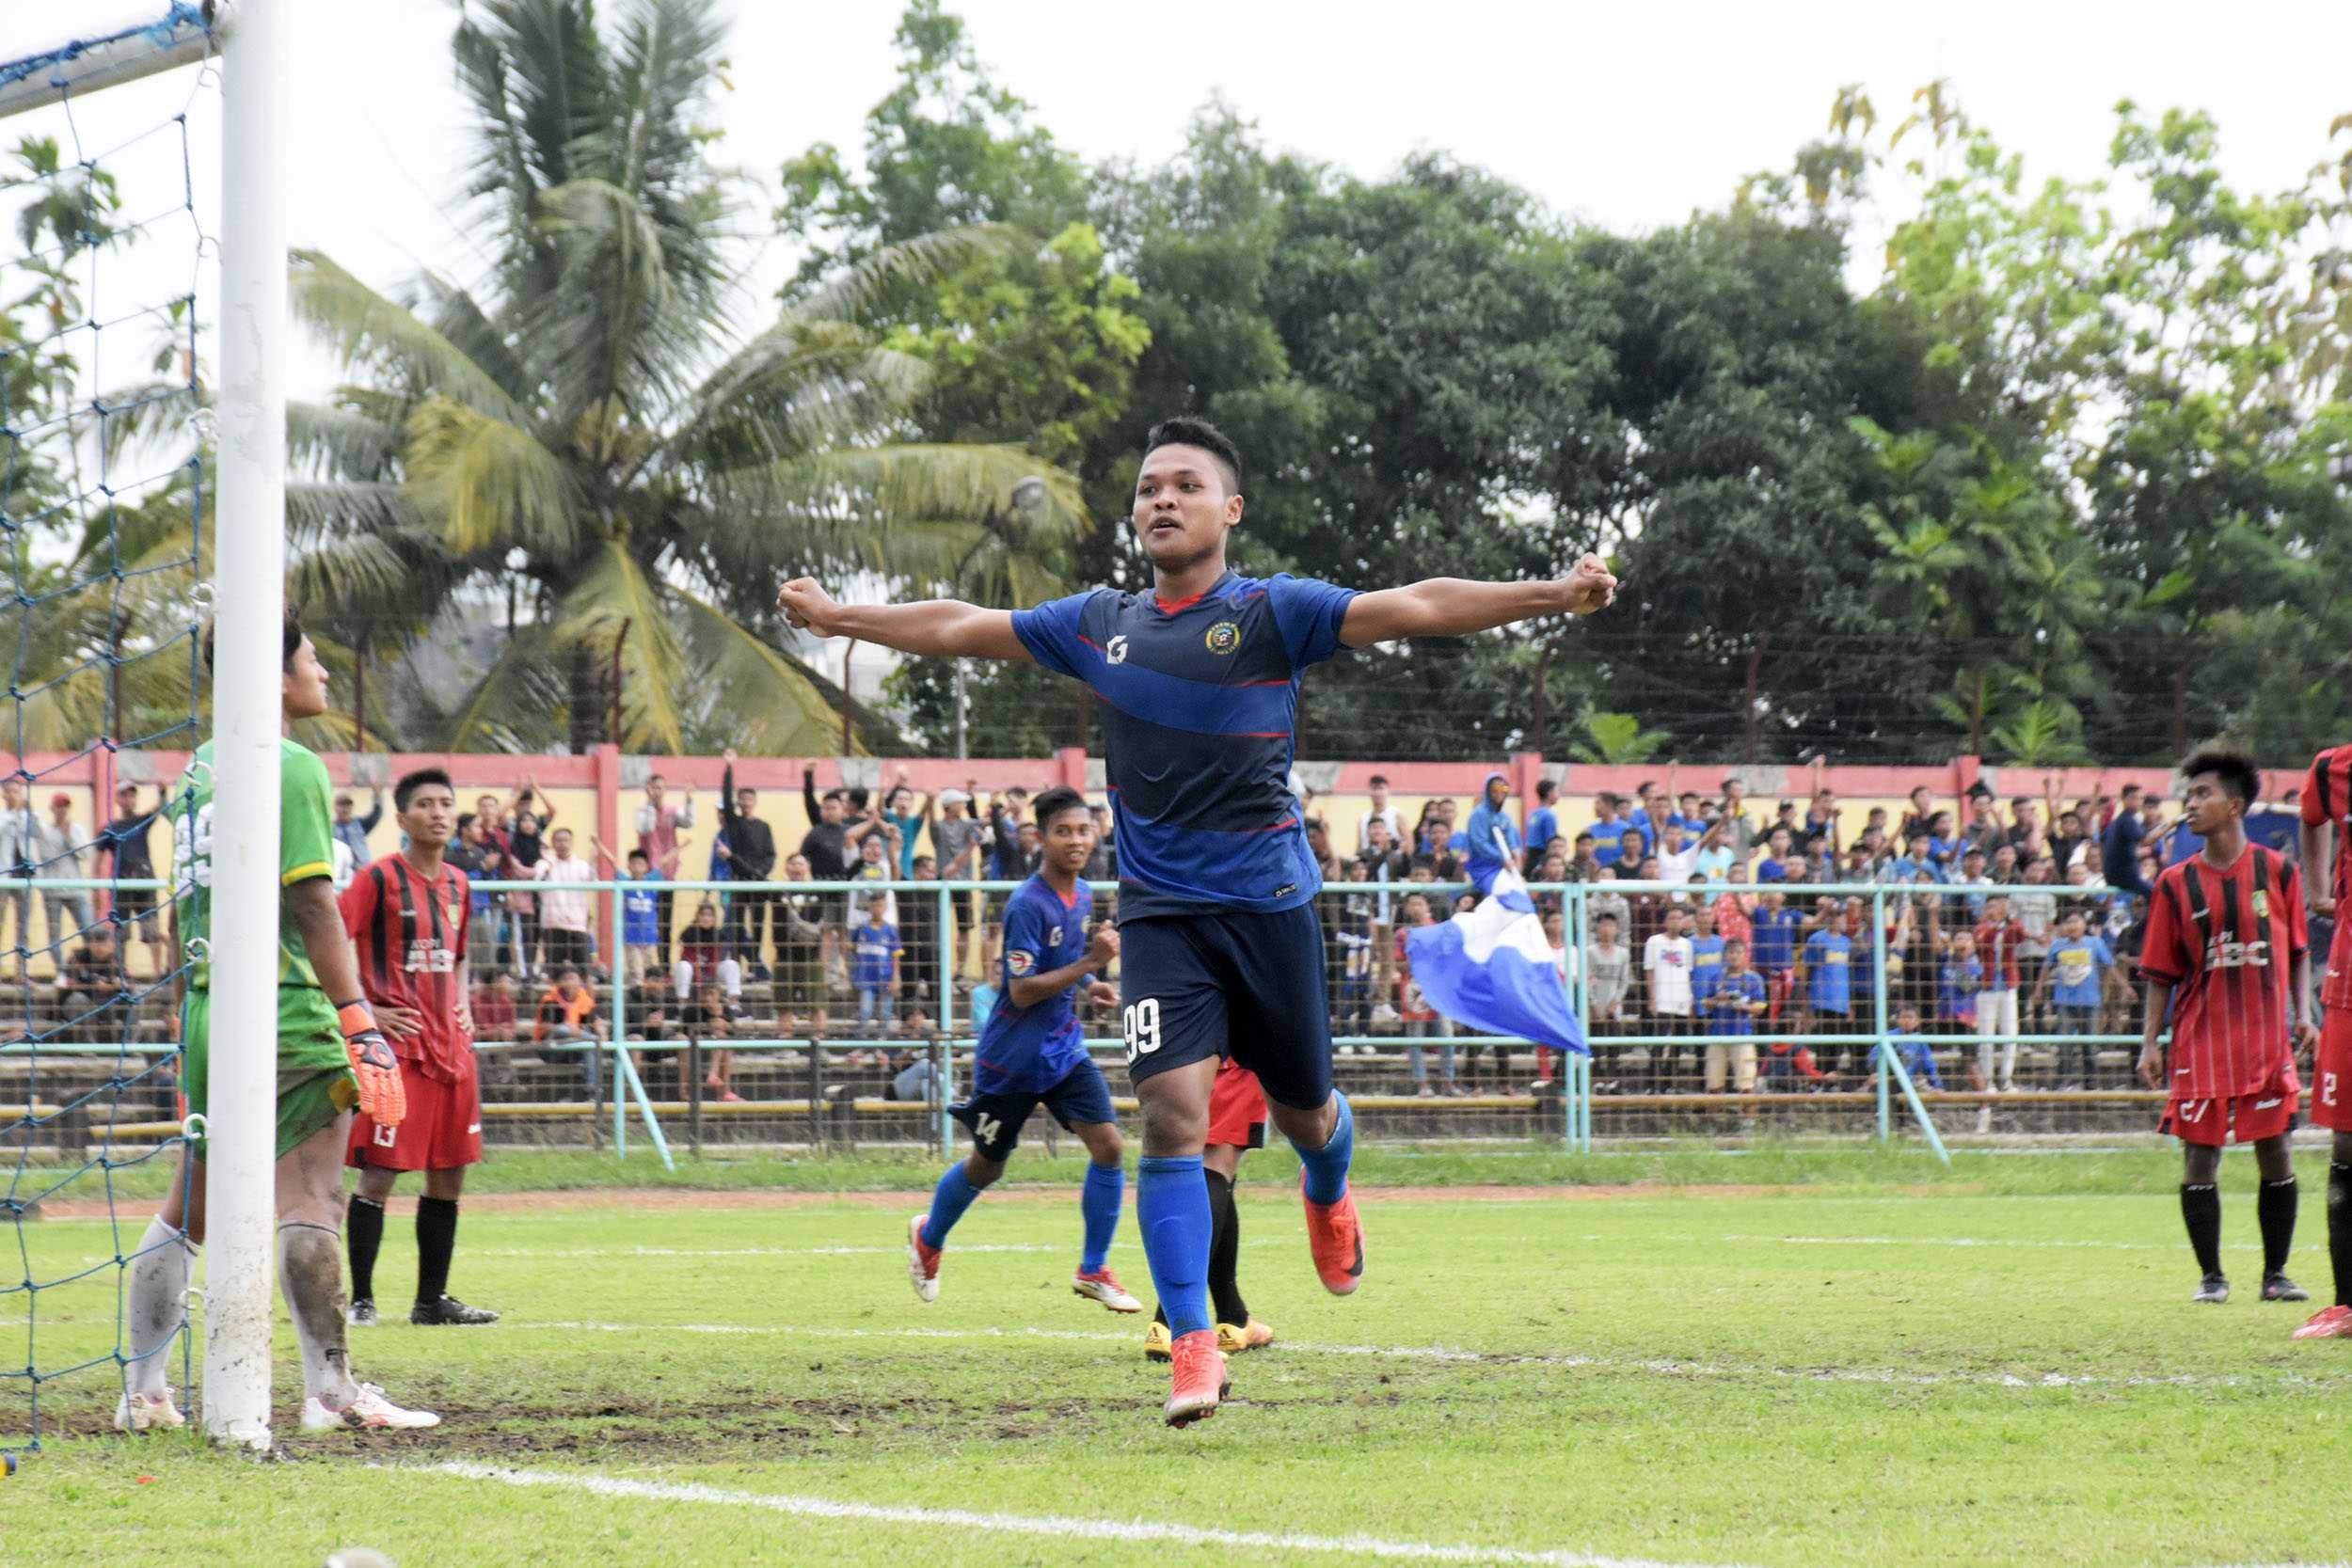 RAYAKAN GOL: Pemain Persibas, Danang Aryanto, merayakan gol ketiga Persibas dari Putra Jombang dalam pertandingan Liga 3 Jateng di Stadion Satria Purwokerto, Sabtu (24/11).